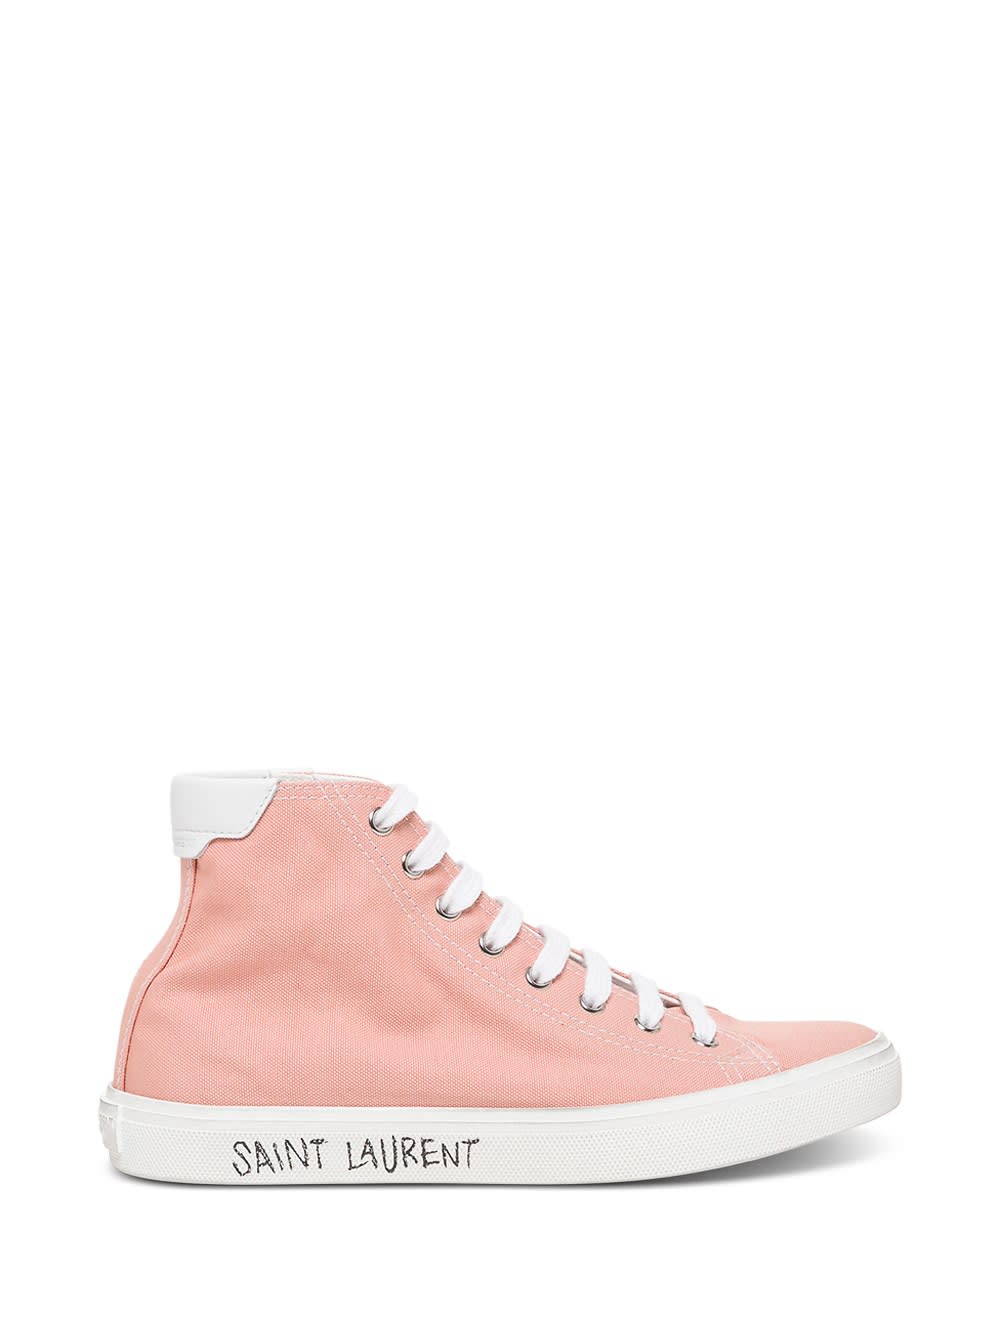 Saint Laurent Malibu Sneakers In Pink Fabric